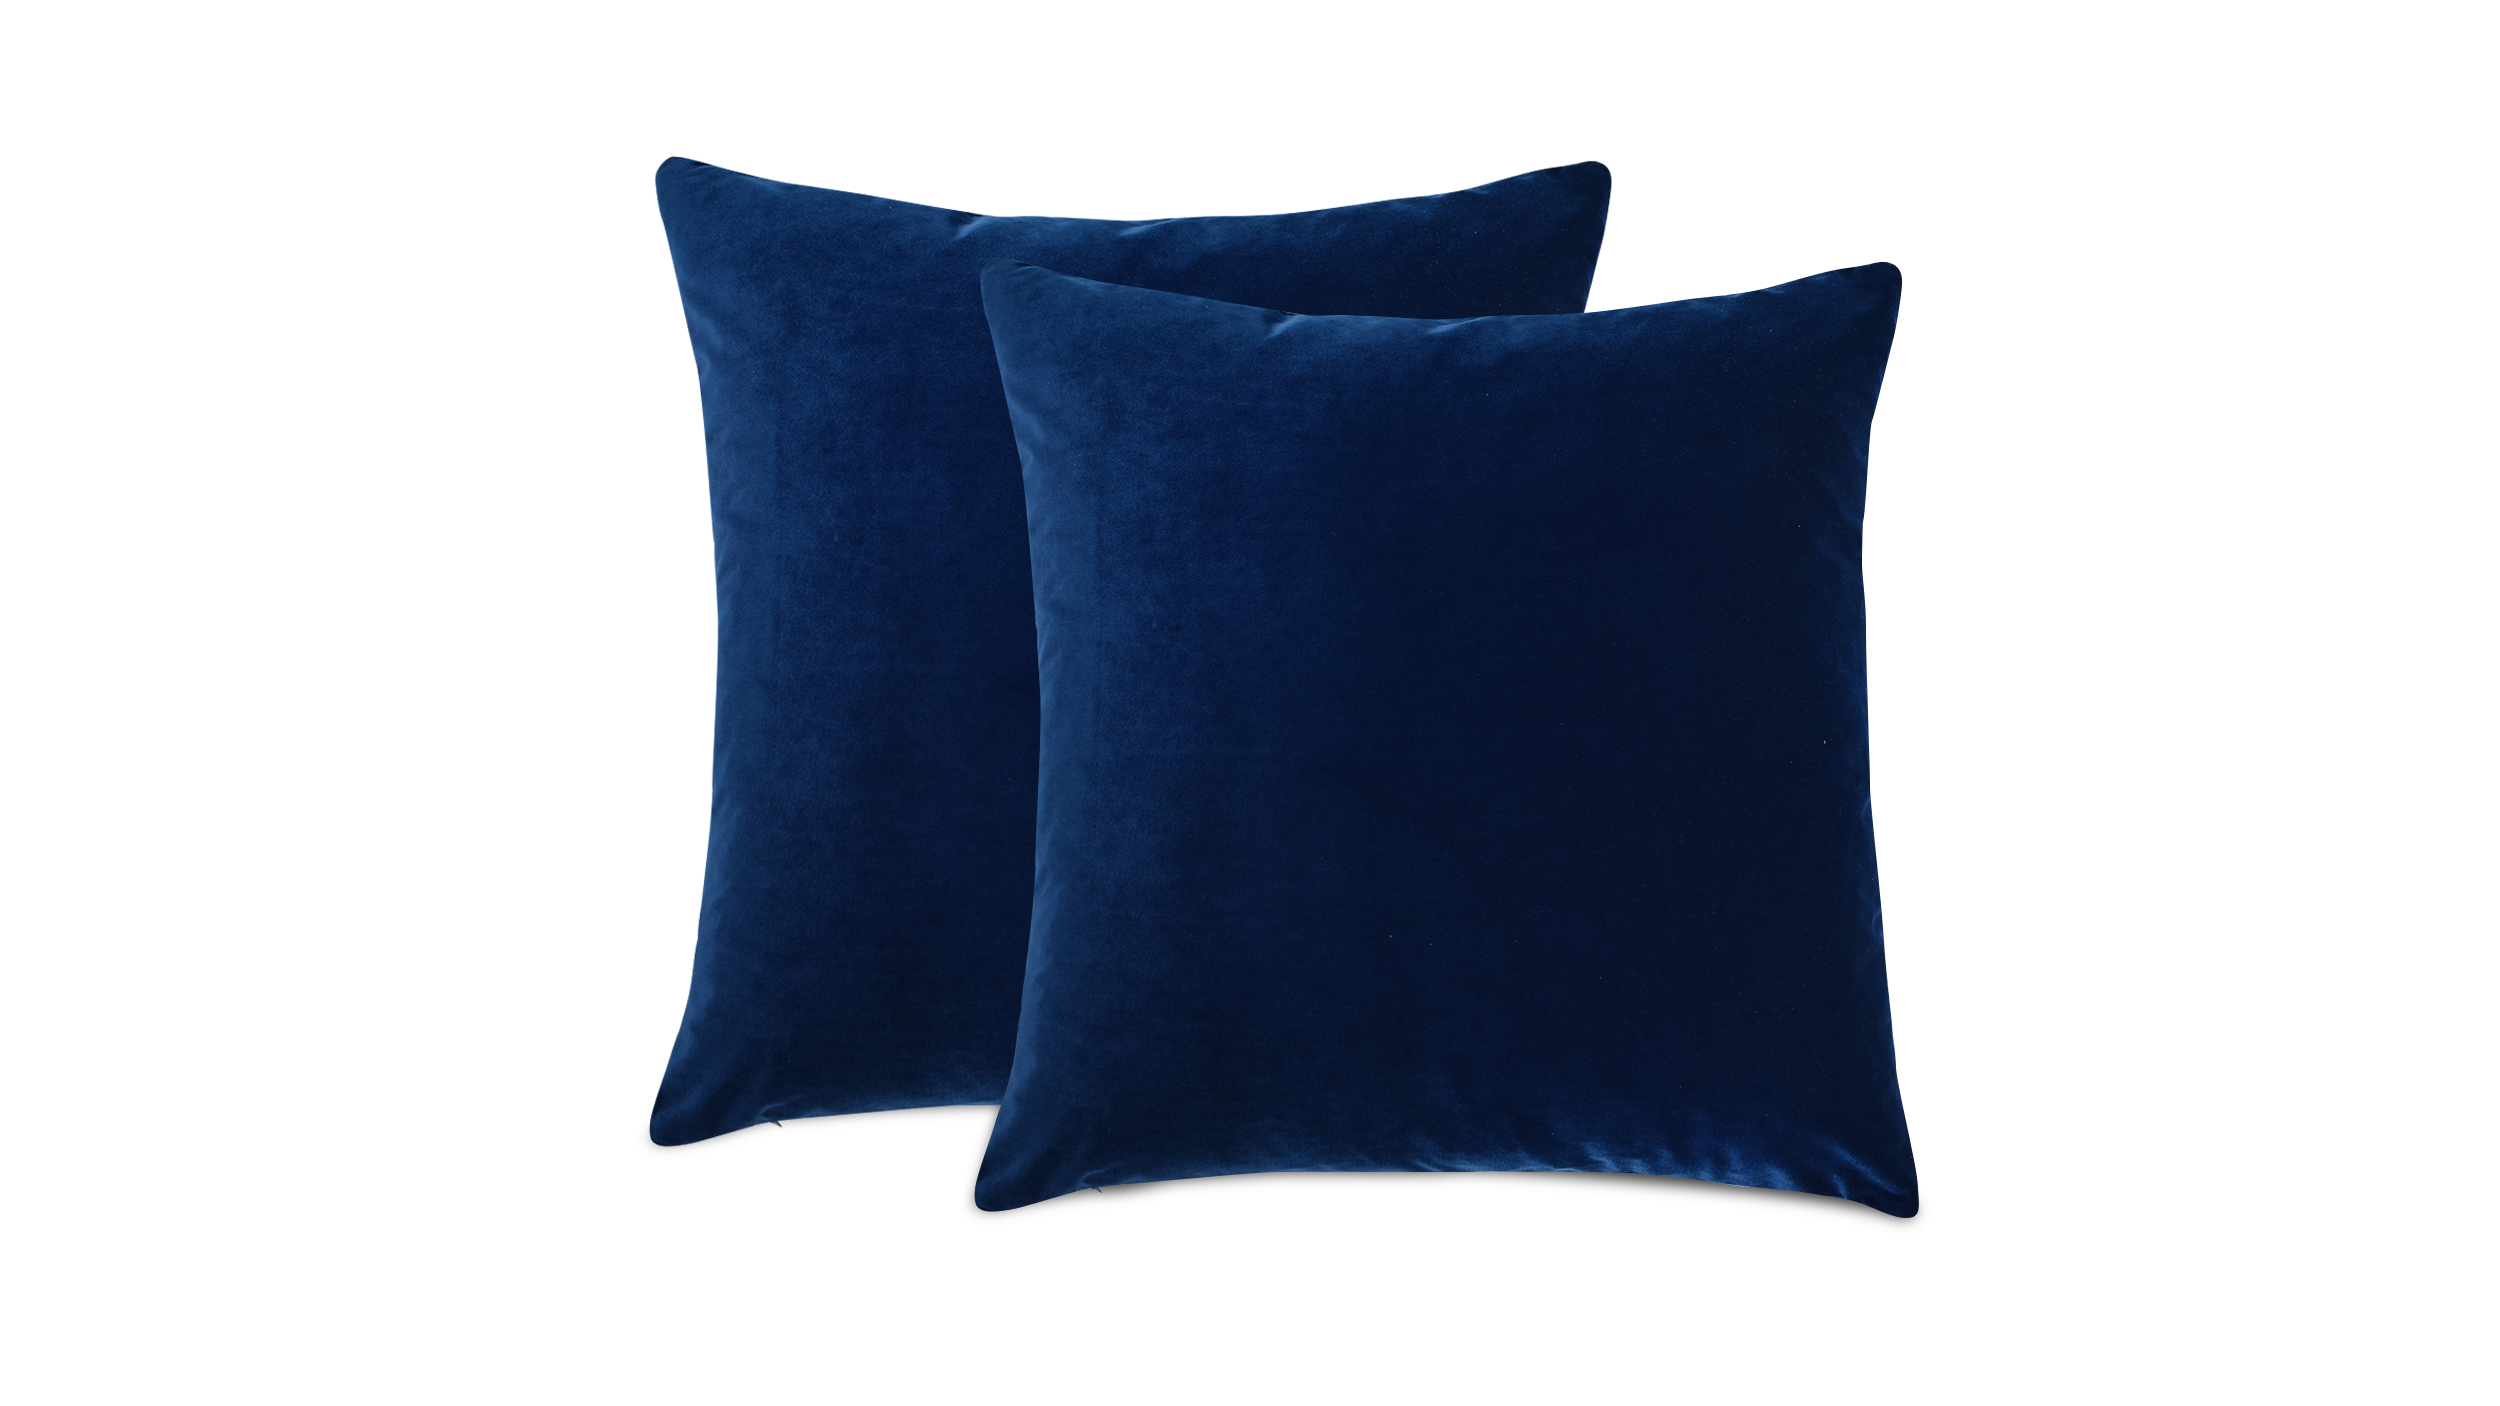 Set of Two Throw Pillows Glee & Indigo Blue Throw Pillows Navy Throw P –  Kings Road Home Decor